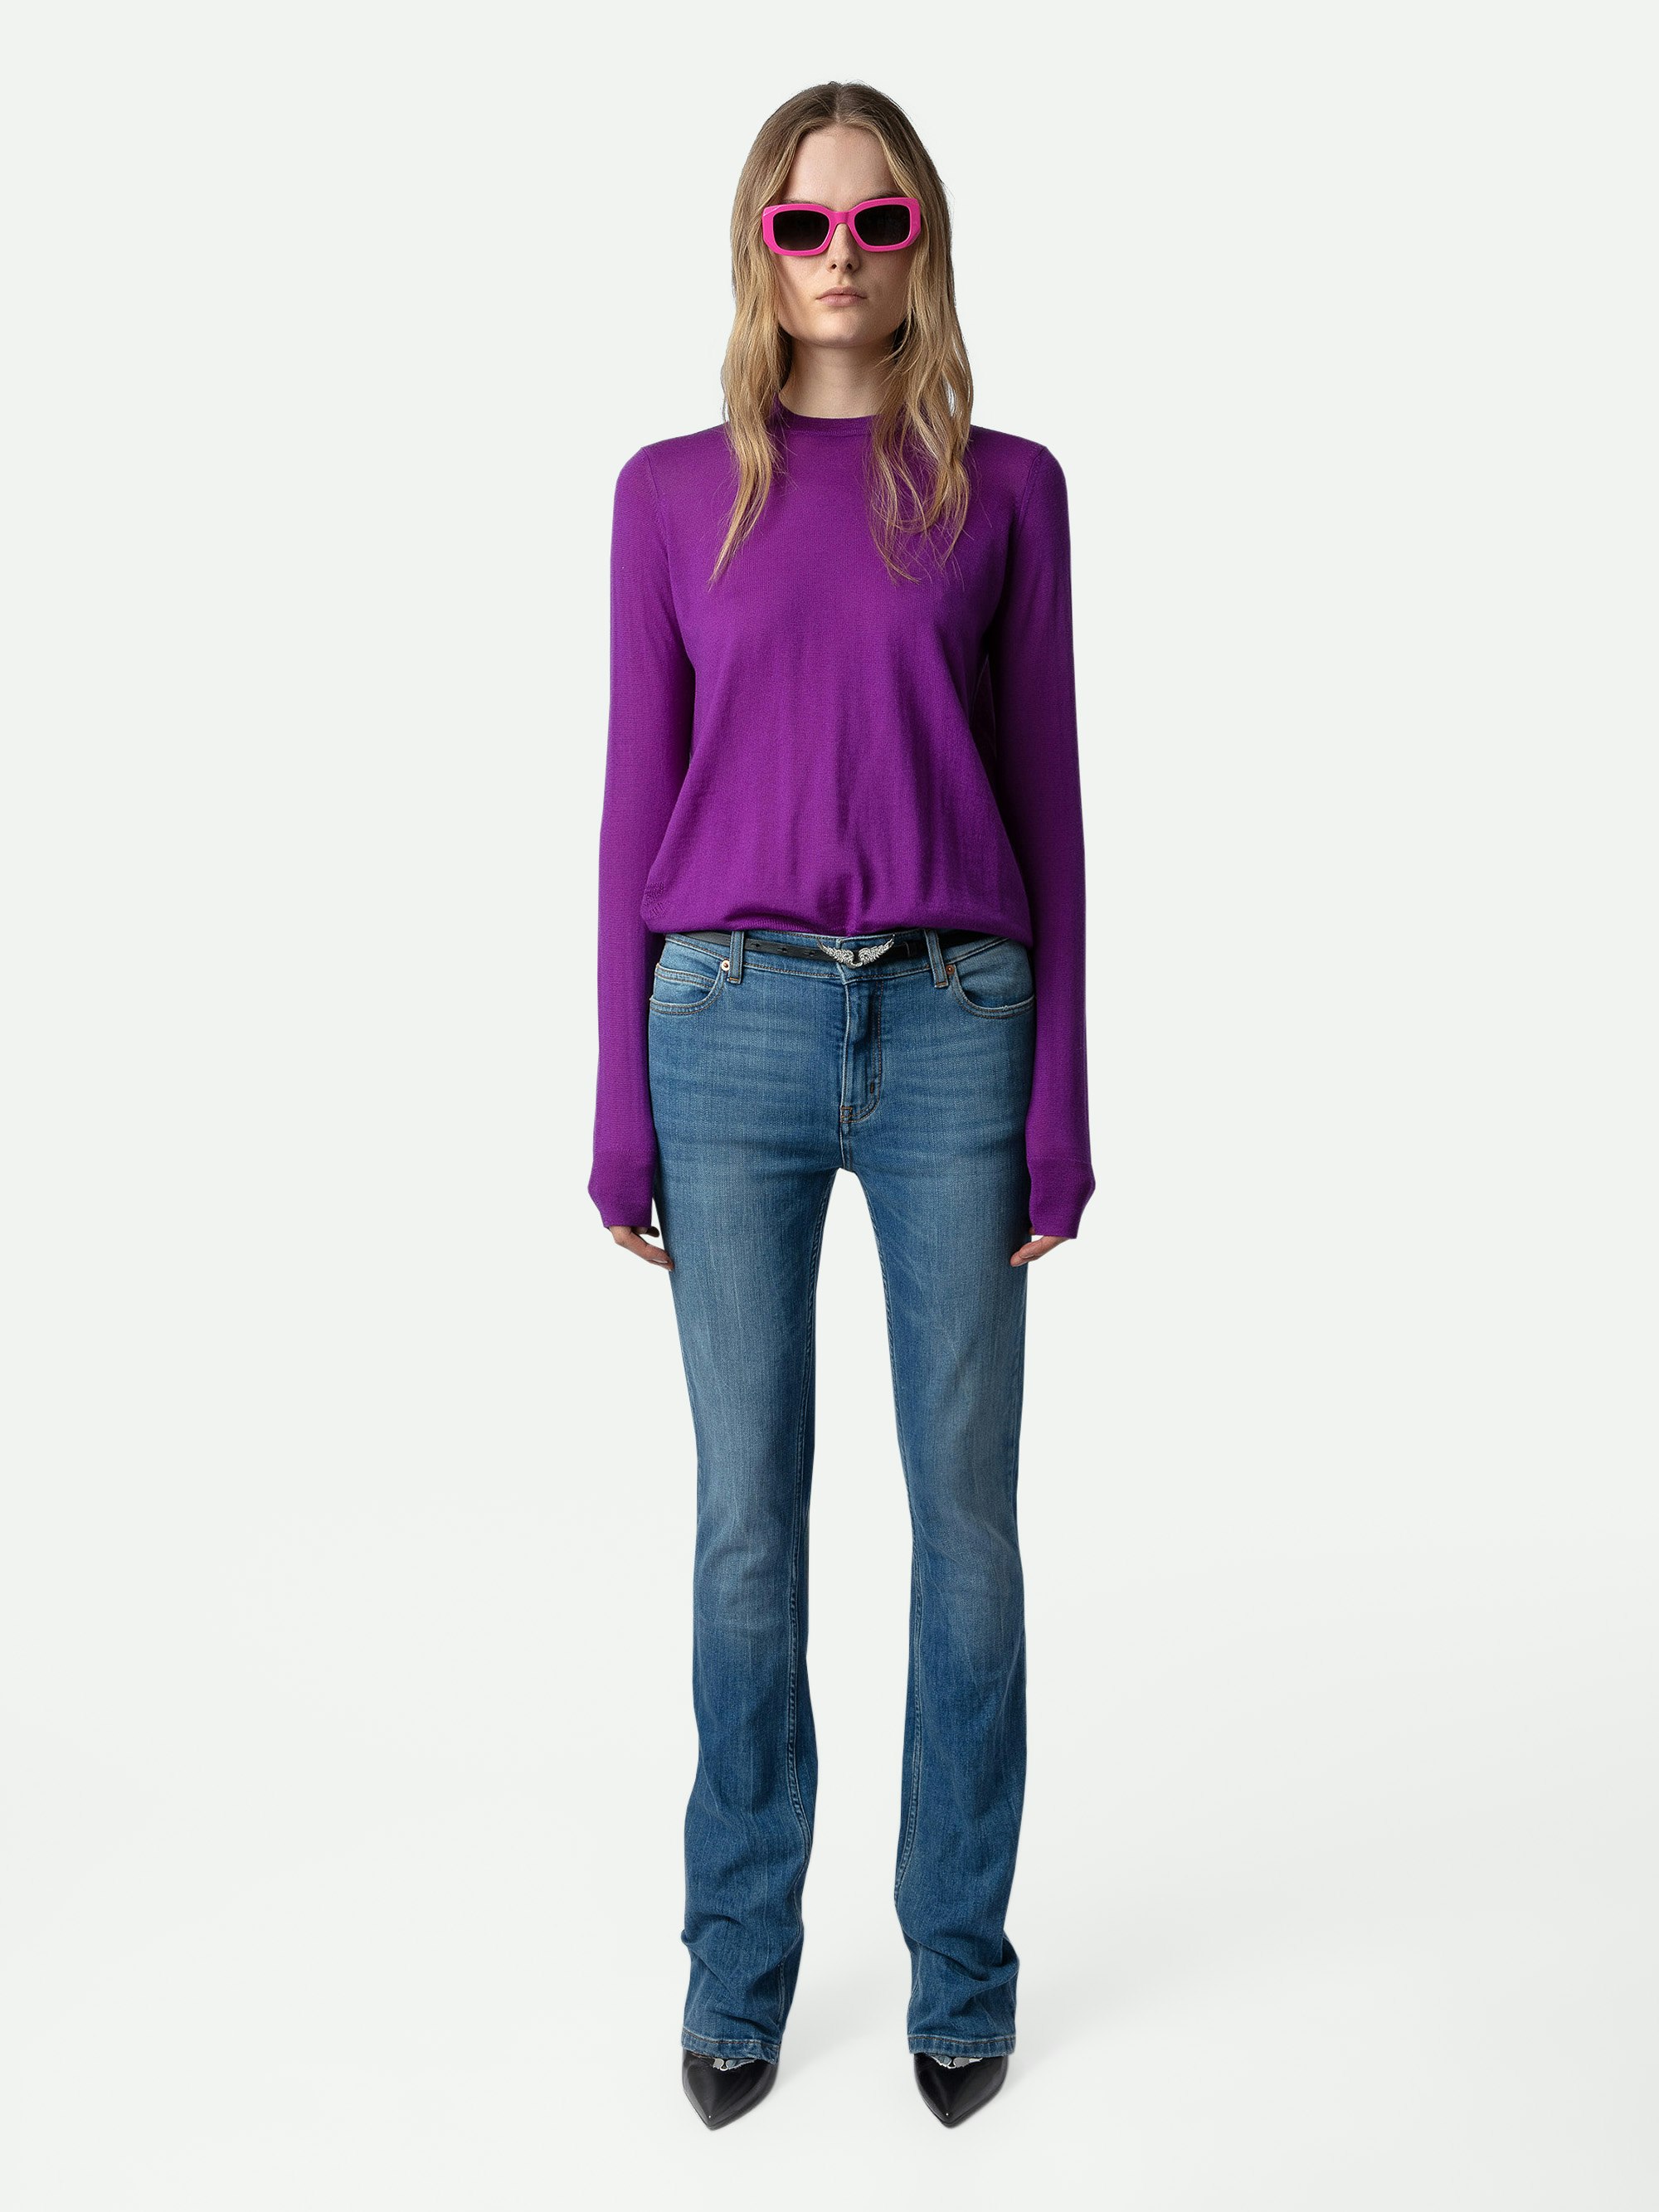 Pullover Emma 100% Merino-Wolle - Violetter Pullover aus 100% Merinowolle mit Rundhalsausschnitt, langen Ärmeln und gekreuzter Rückenöffnung.